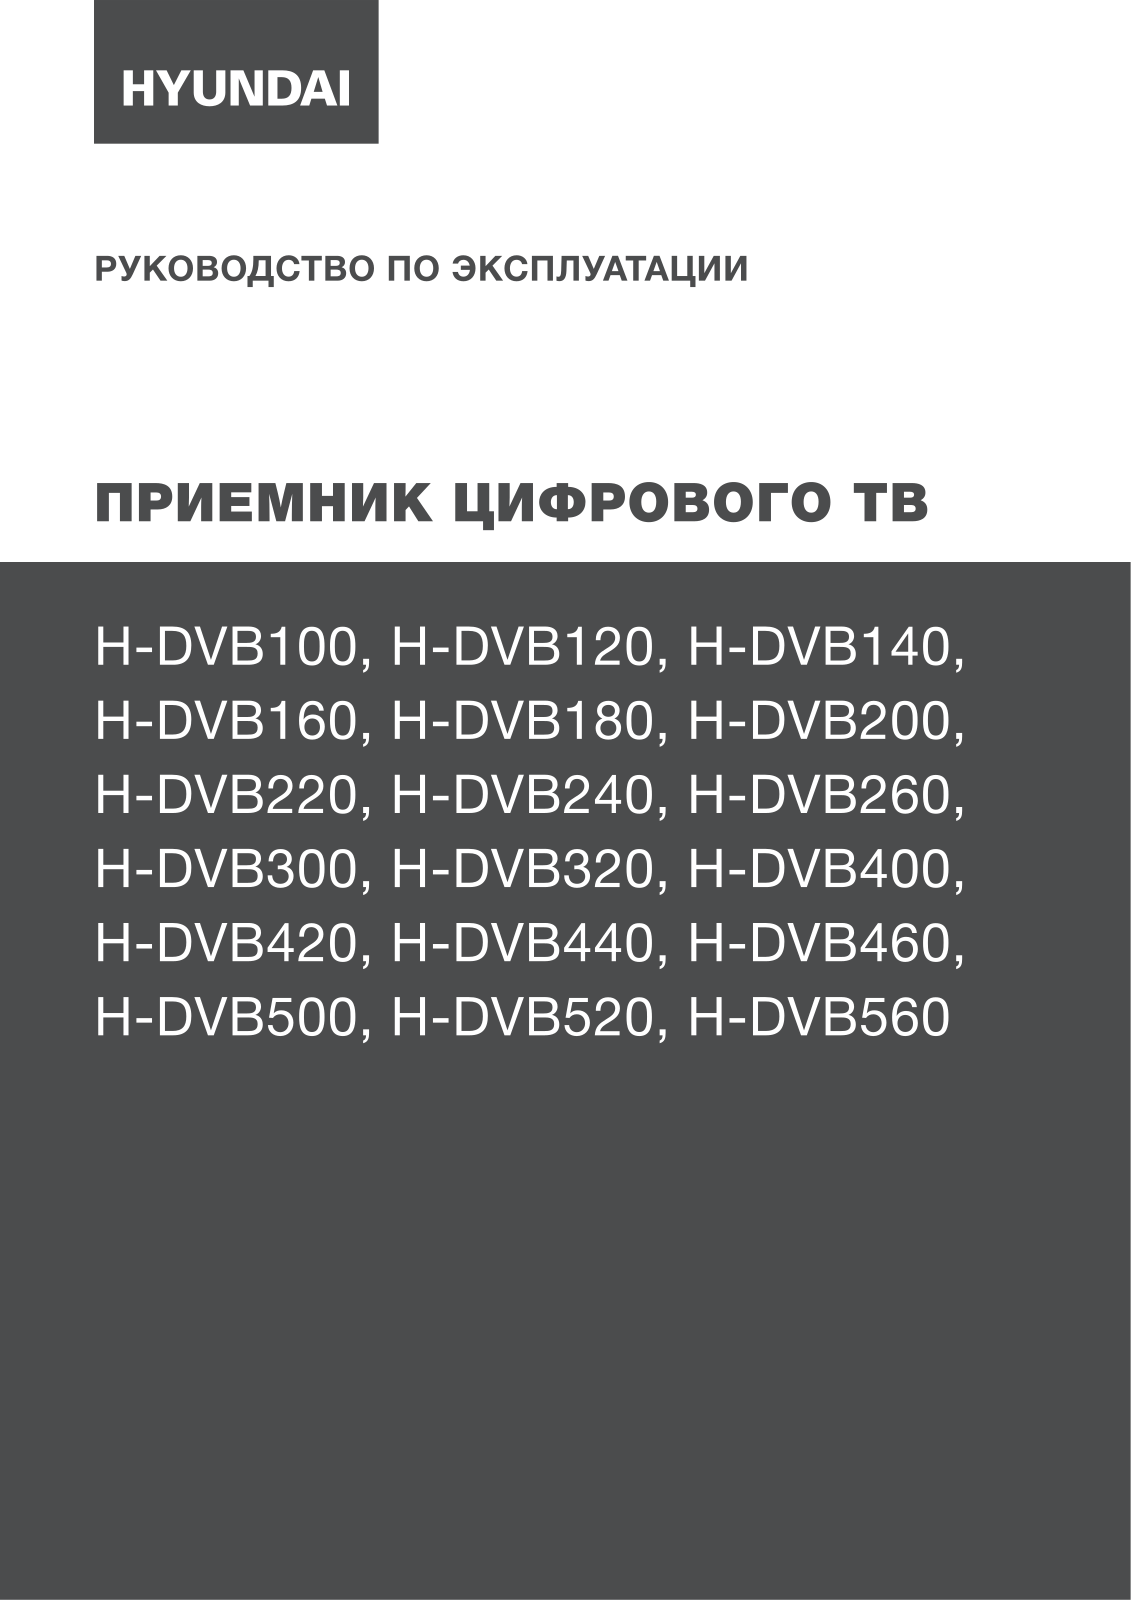 Hyundai H-DVB520 User Manual